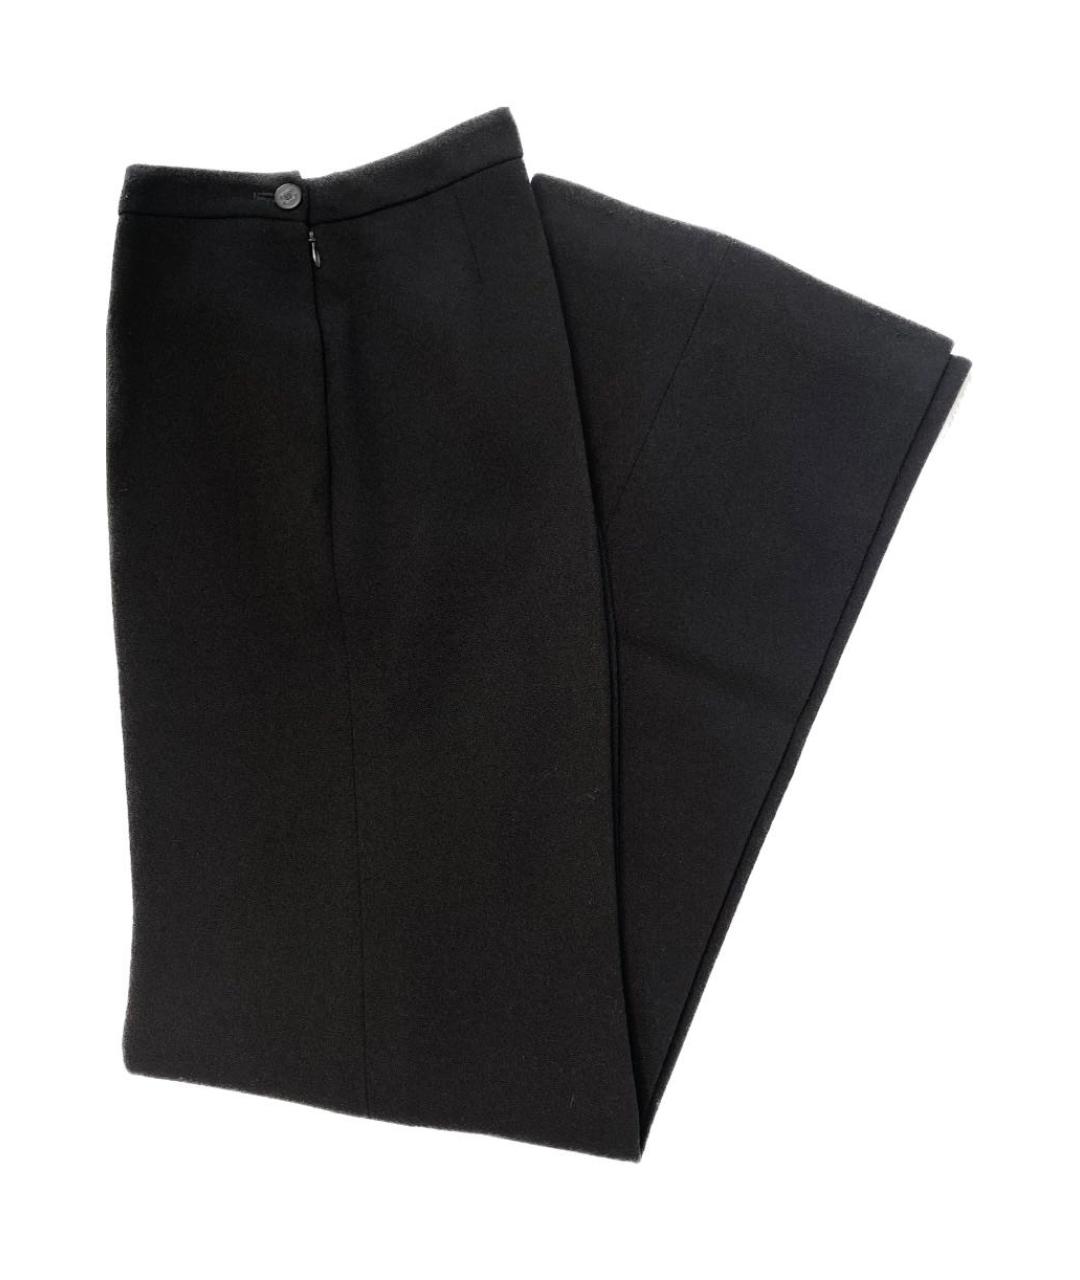 CHANEL PRE-OWNED Черные шерстяные прямые брюки, фото 3